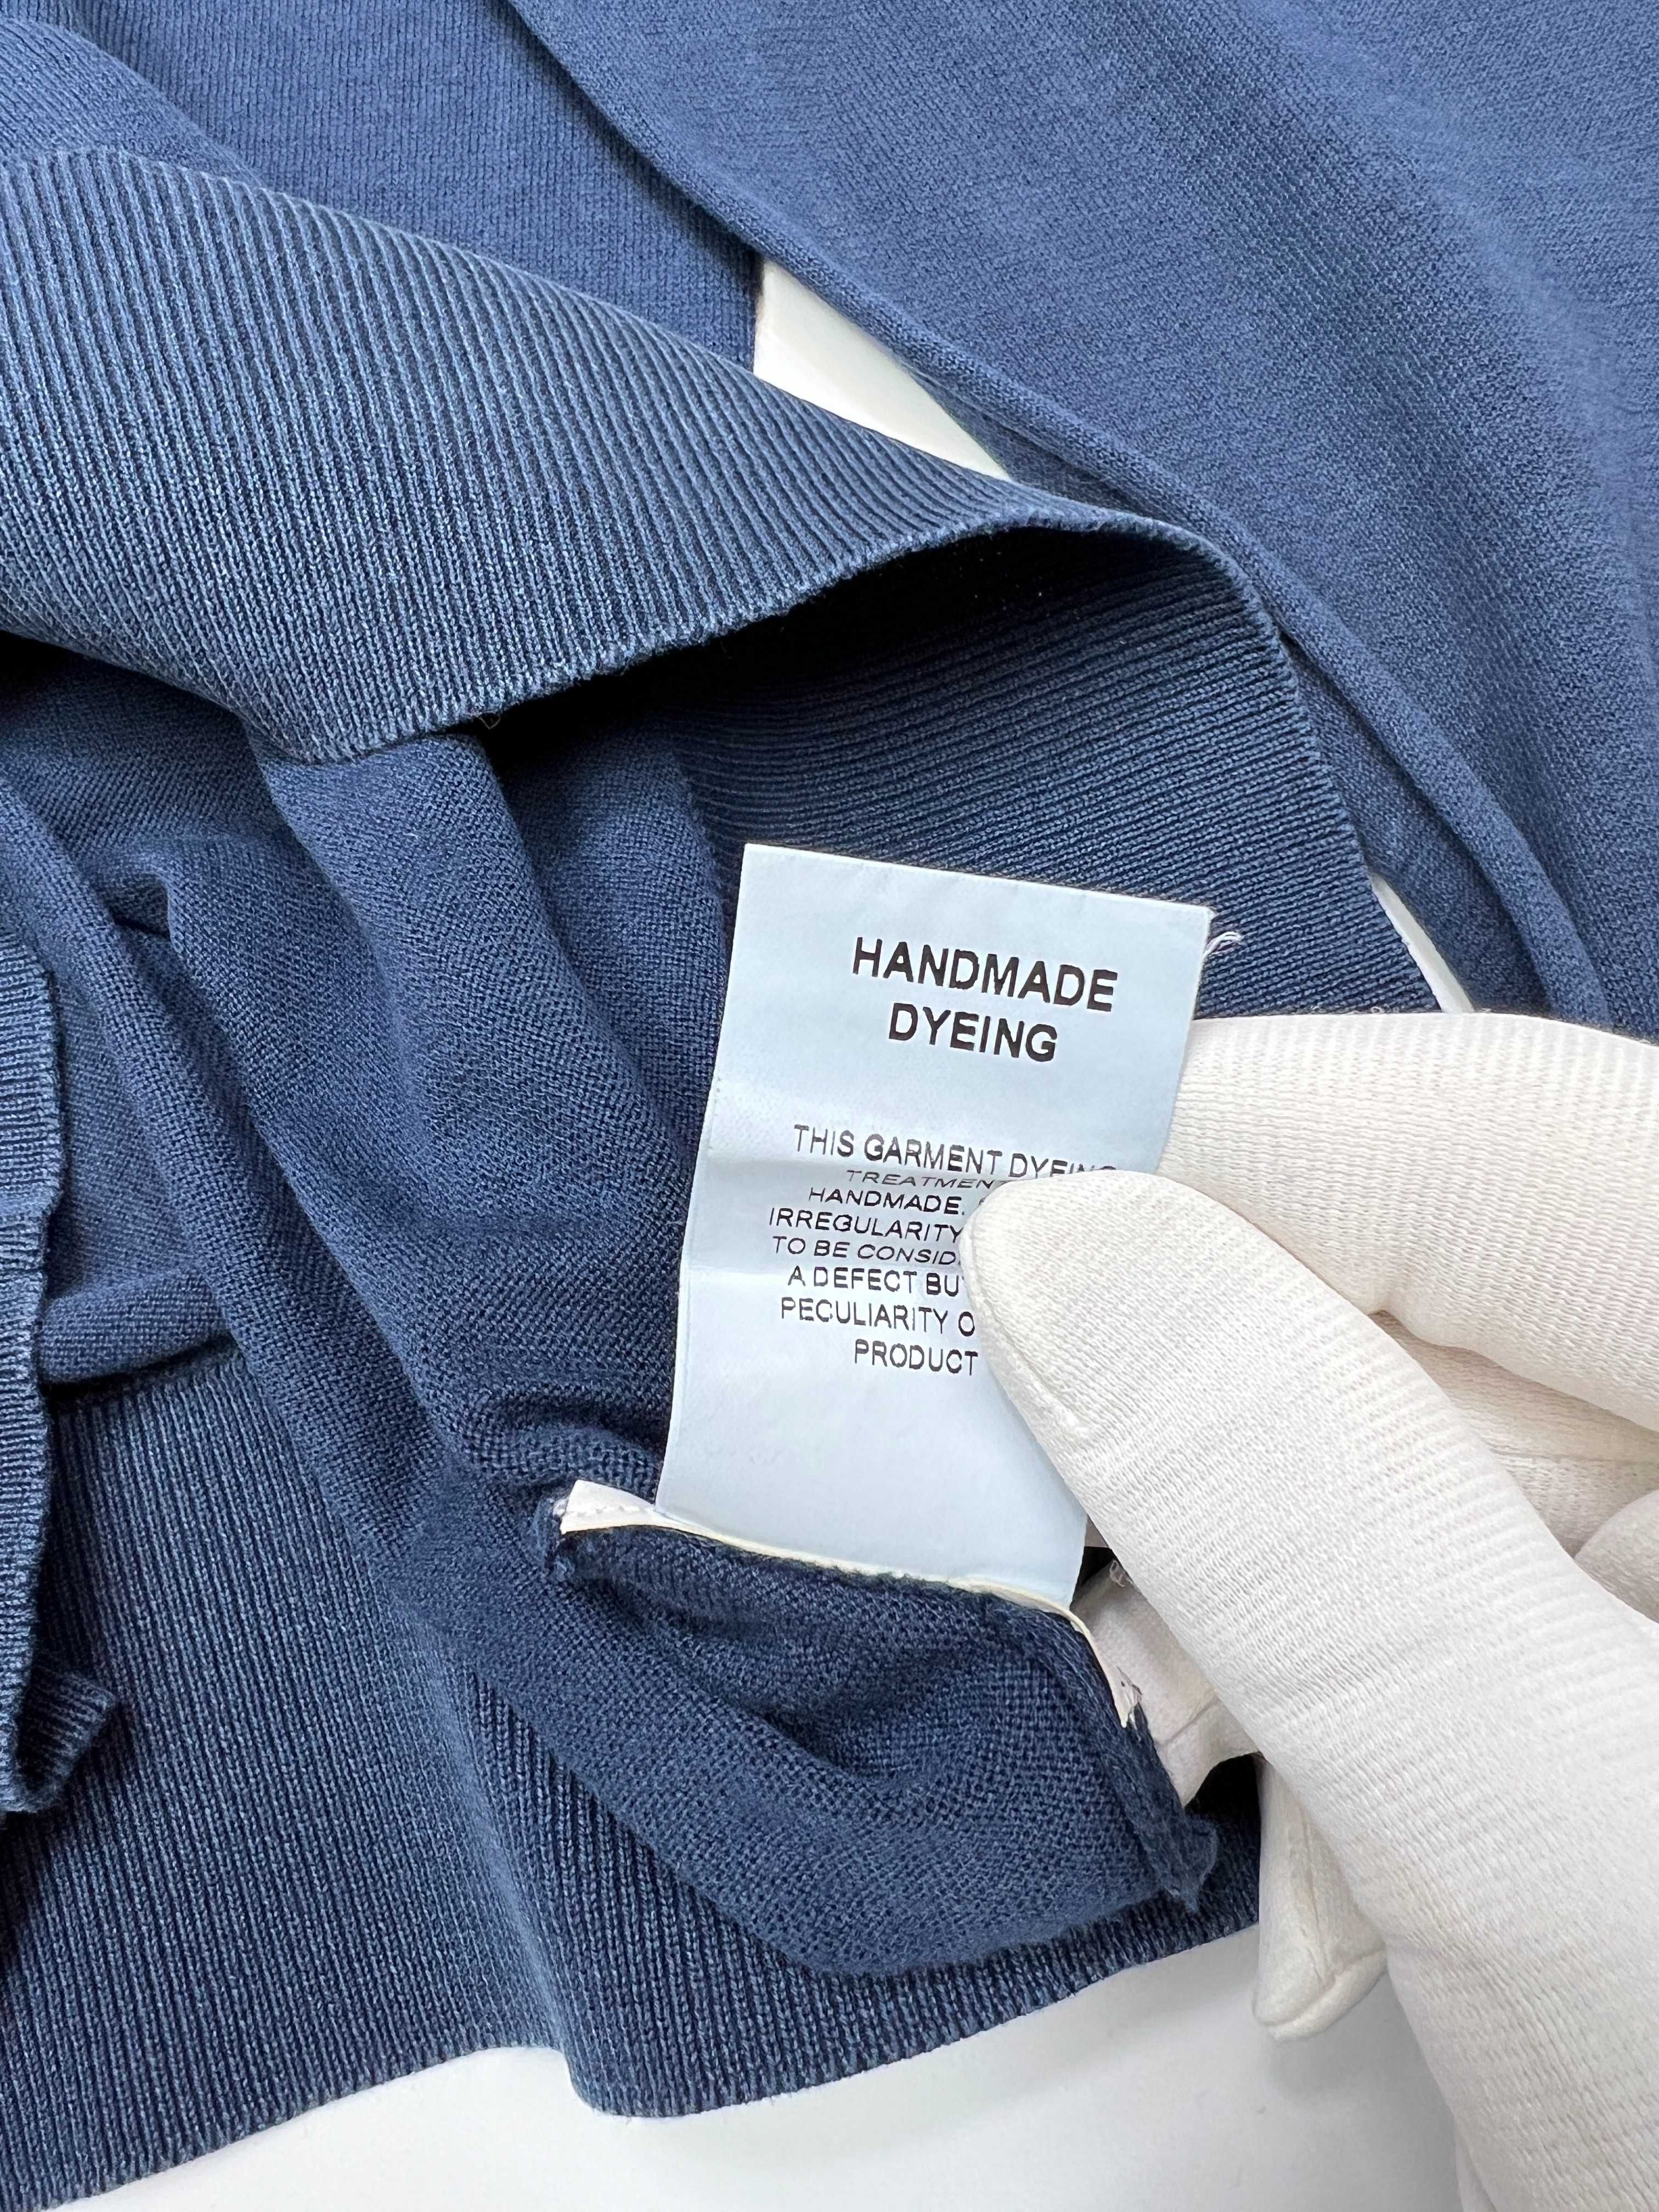 Moncler оригінальний светр  garment dyed prada